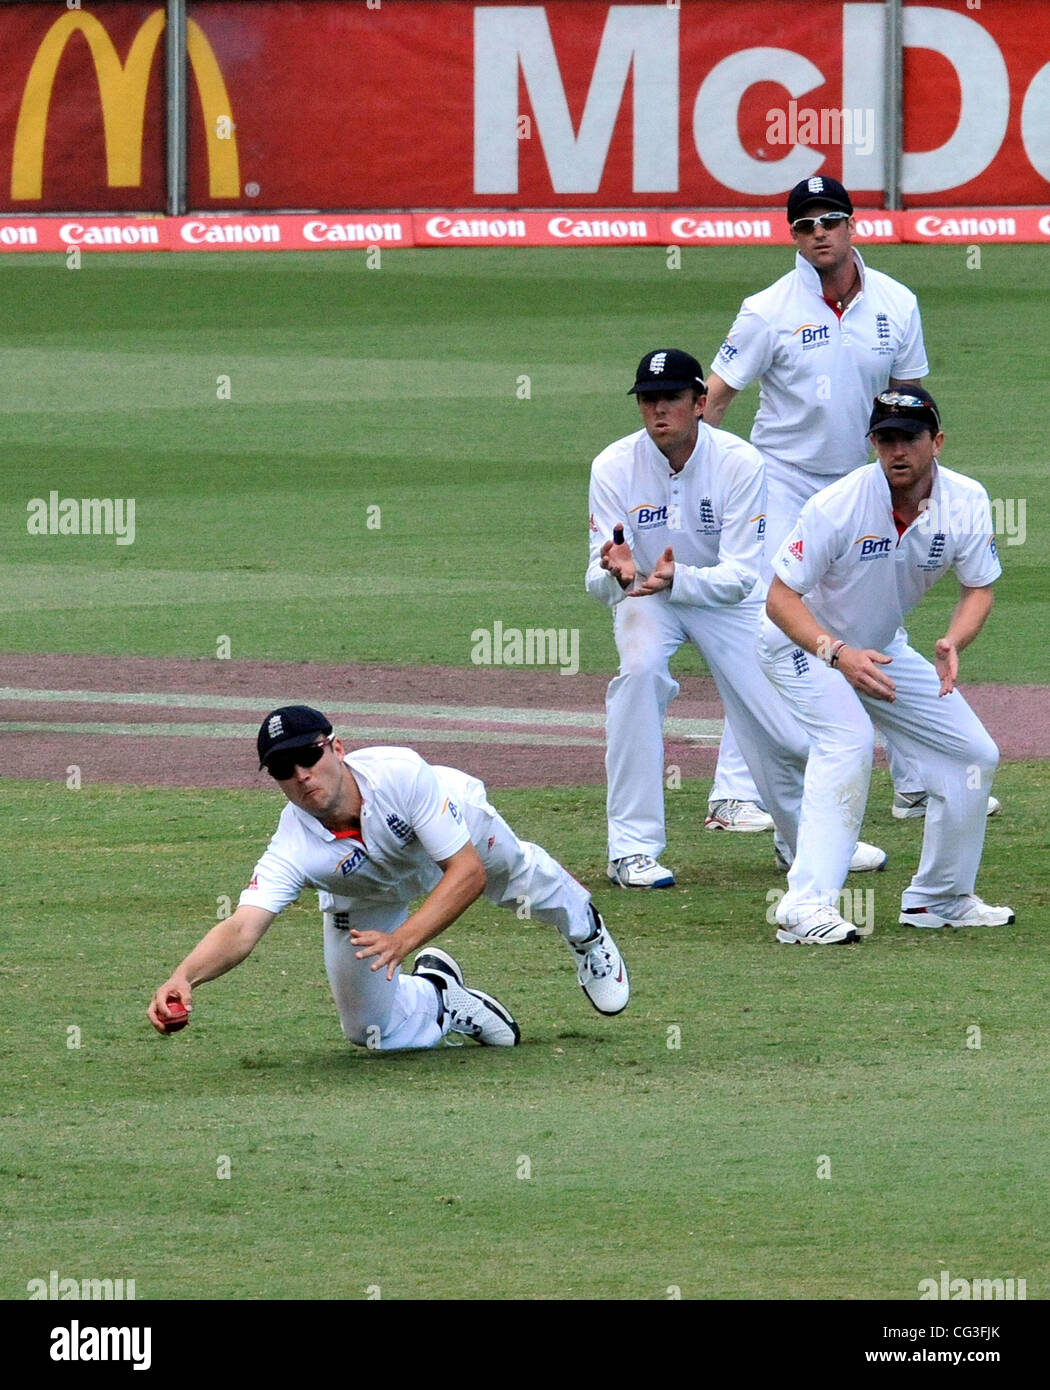 Les joueurs de l'Angleterre Angleterre équipe de cricket ont battus l'Australie le dernier test de cendres à Sydney. C'est la première fois en 24 ans que l'Angleterre a gagné sur le sol australien. L'Angleterre bat l'Australie par un innings et 83 pour sceller leur victoire. Sydney, Australie Banque D'Images